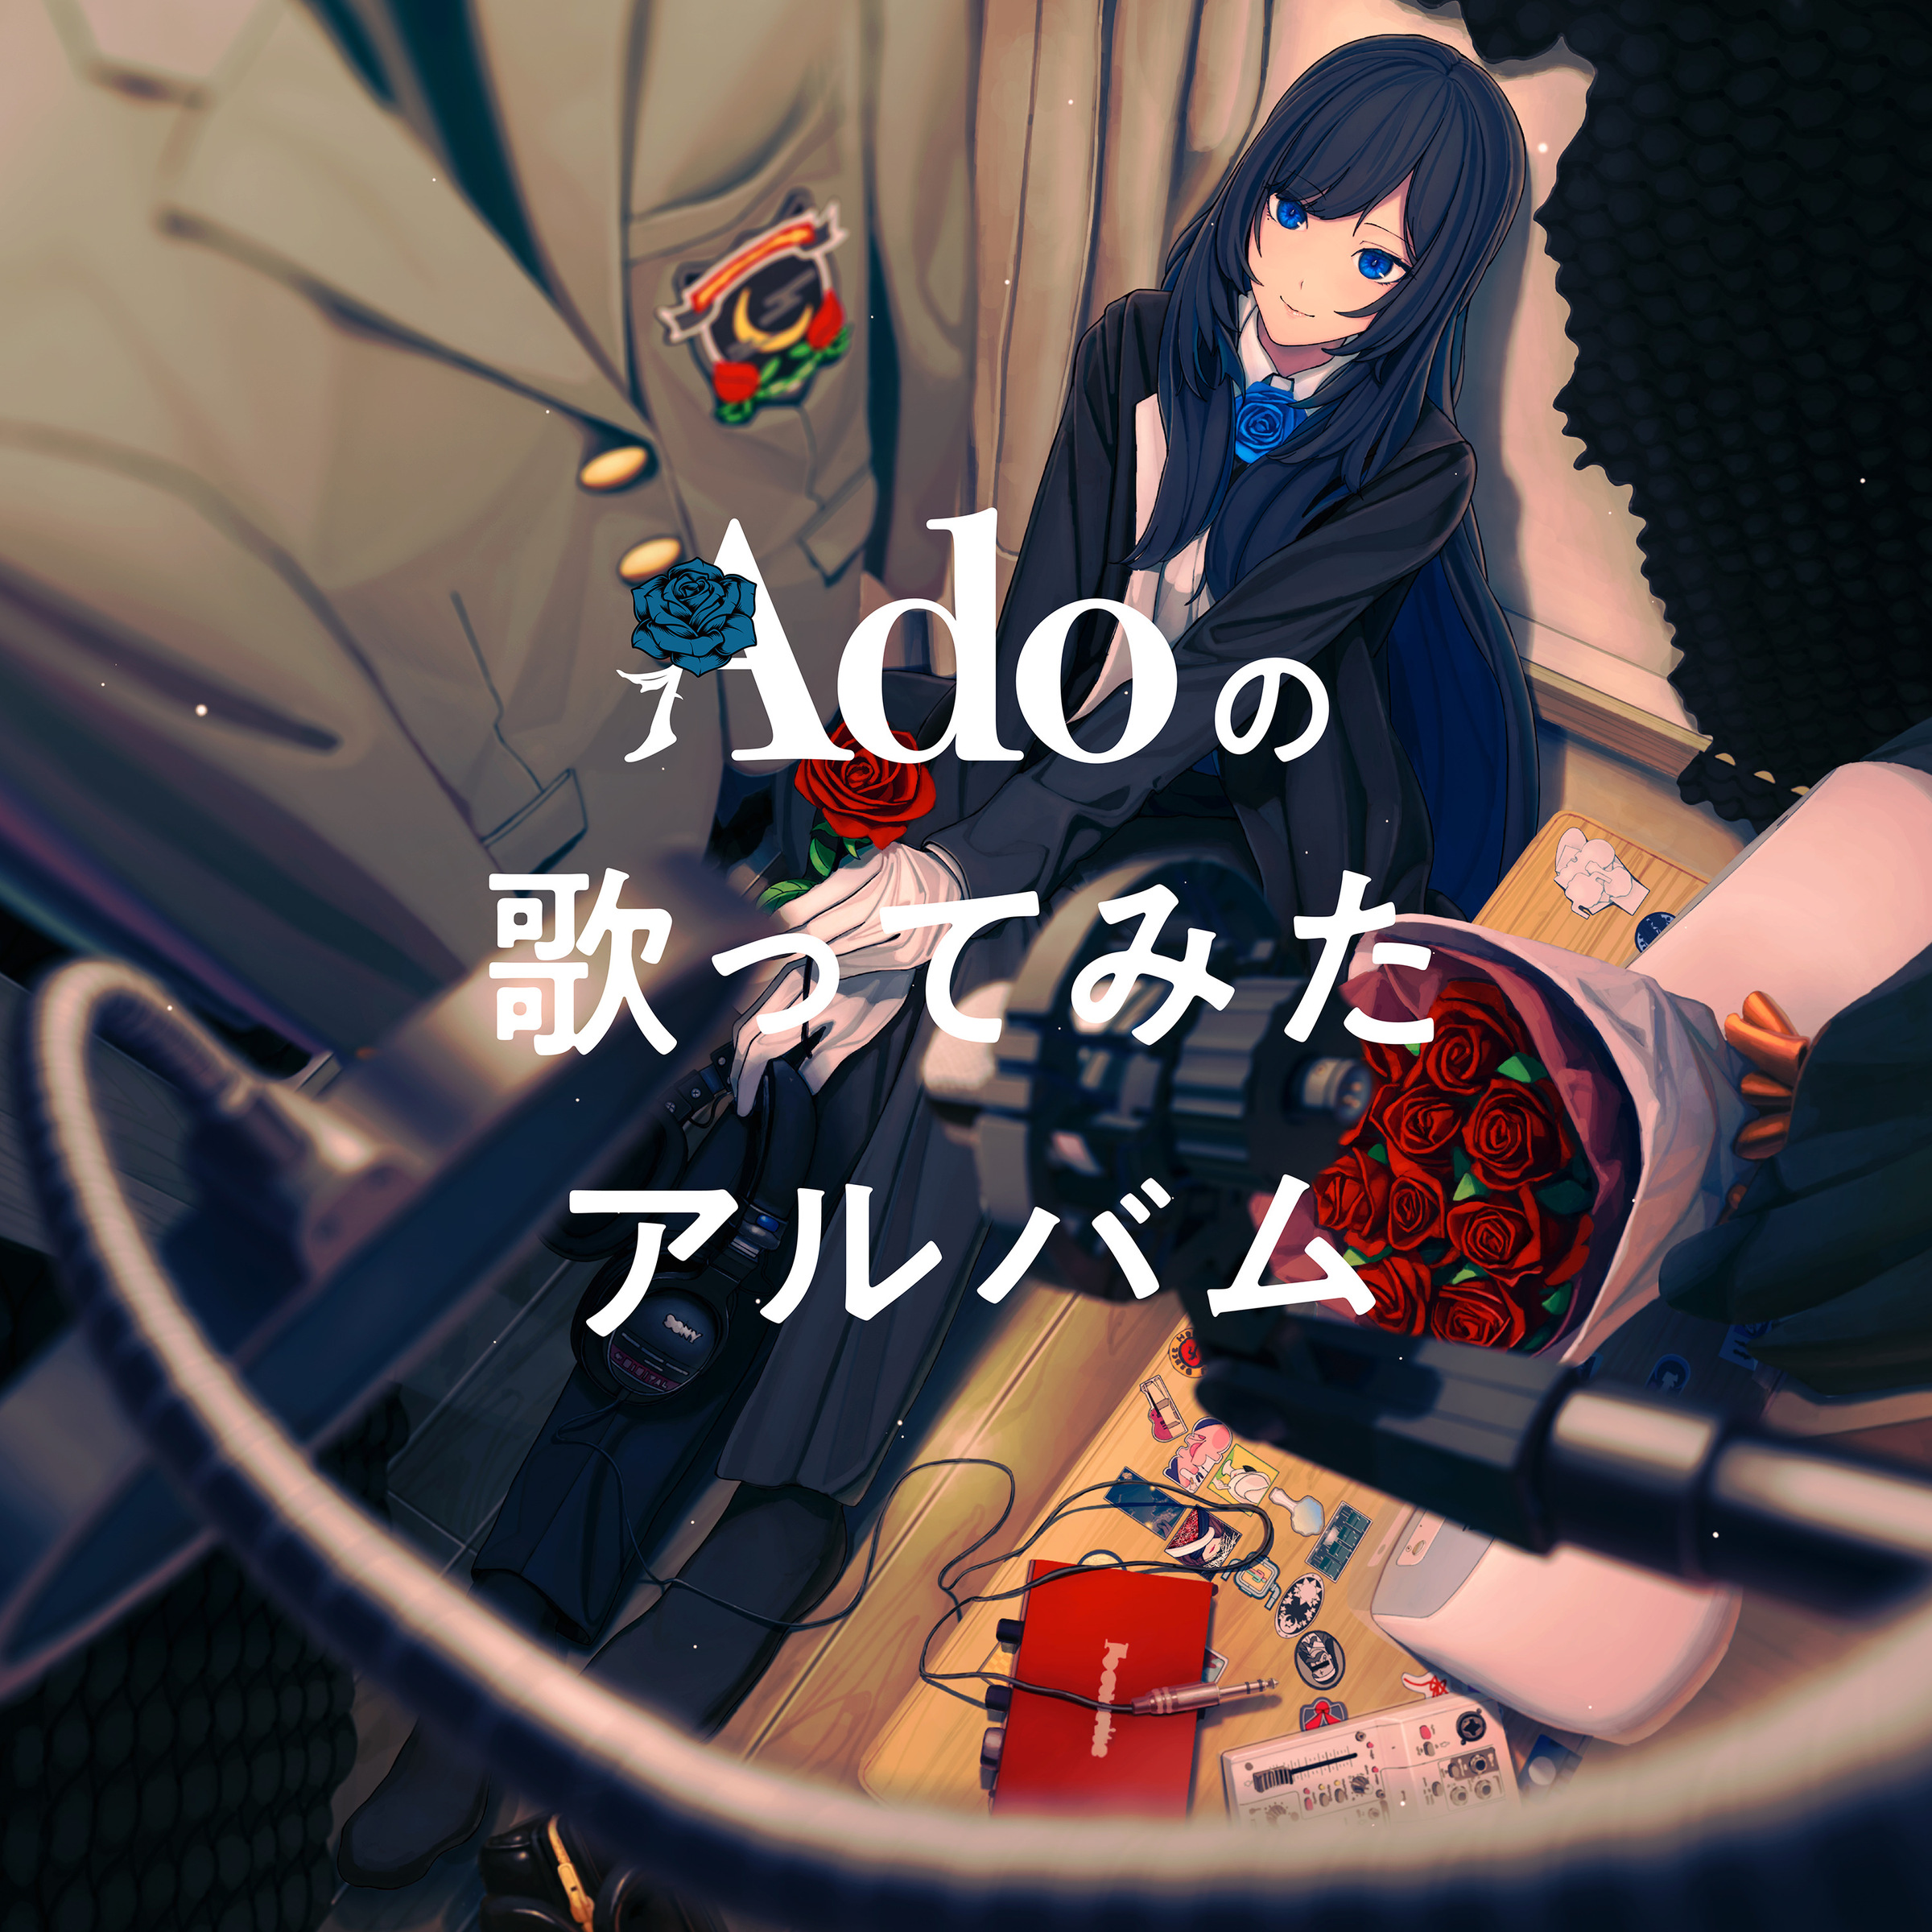 Ado — Buriki no Dance cover artwork